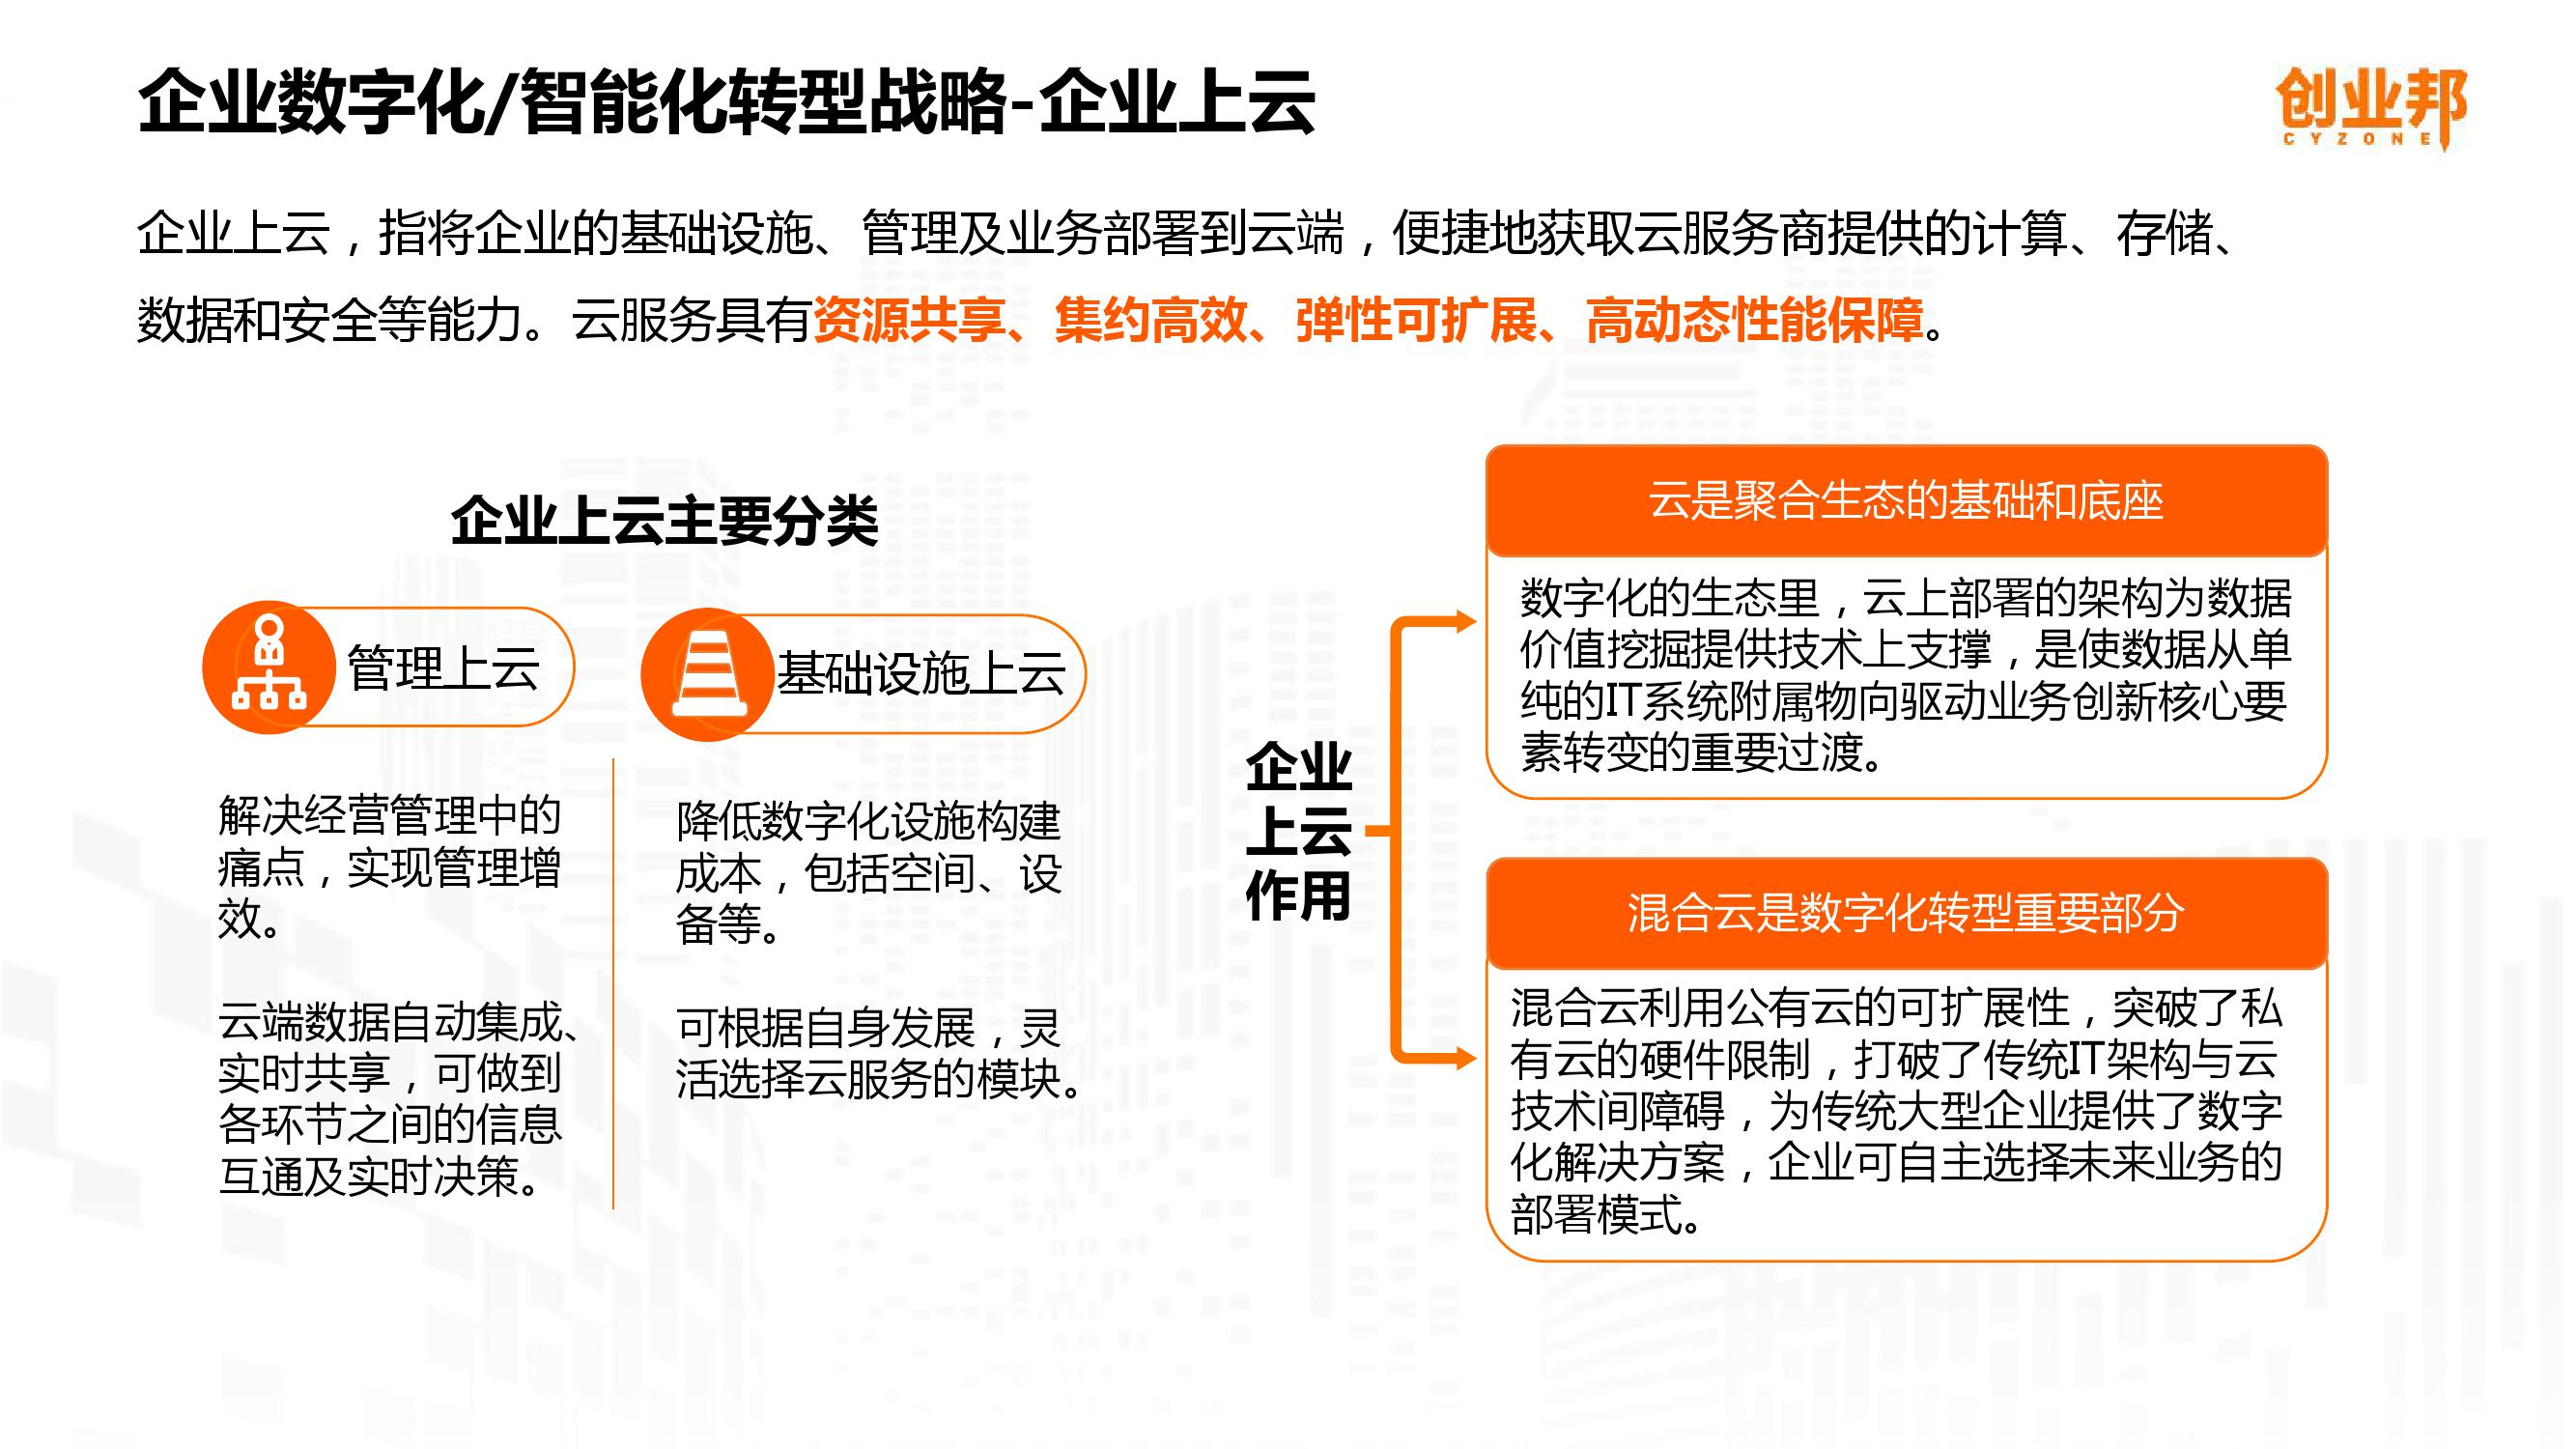 2019中国企业数字化智能化研究报告_000009-3